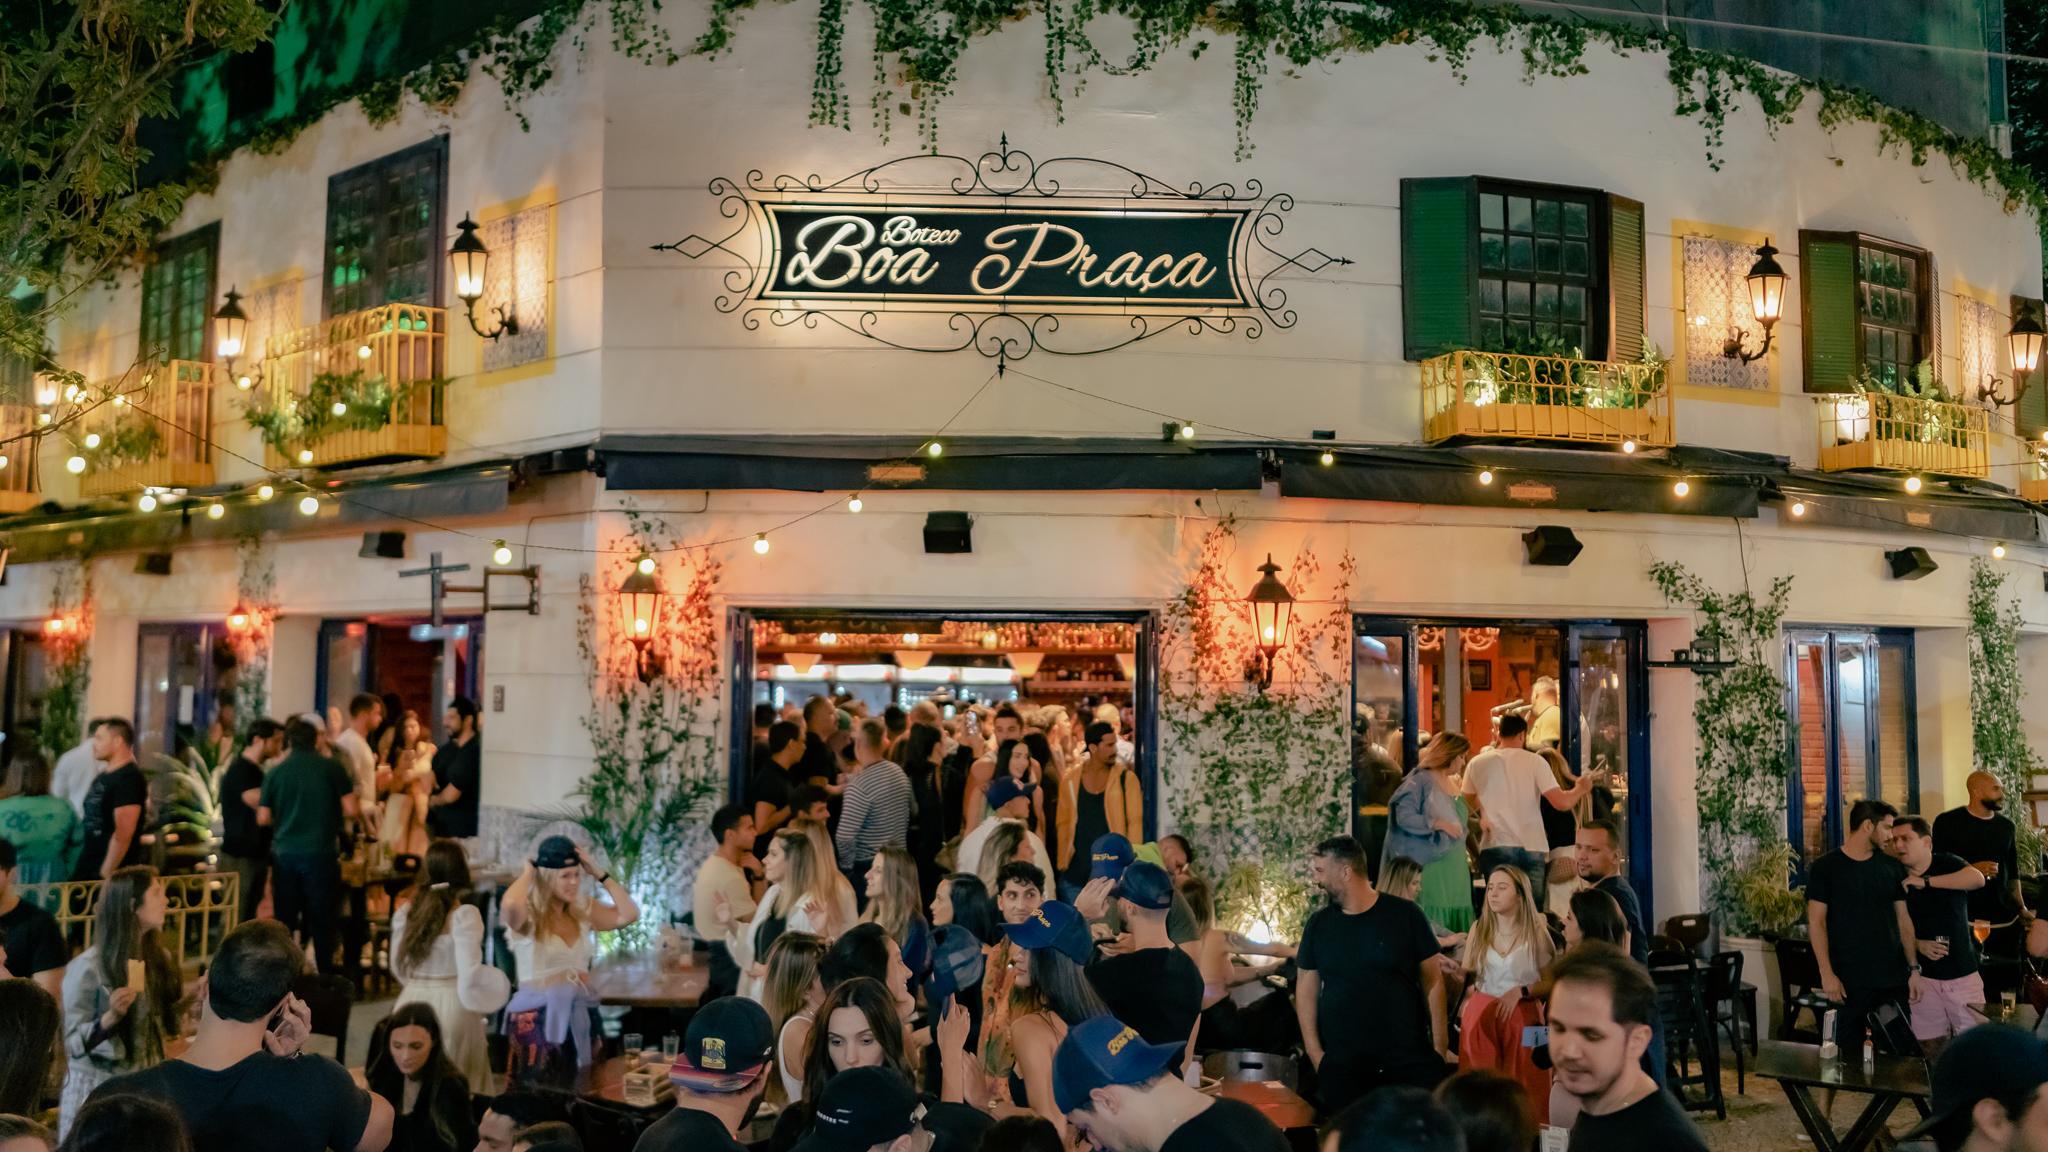 Neste sábado tem a abertura oficial do Bar, Boteco & Cia 2022!